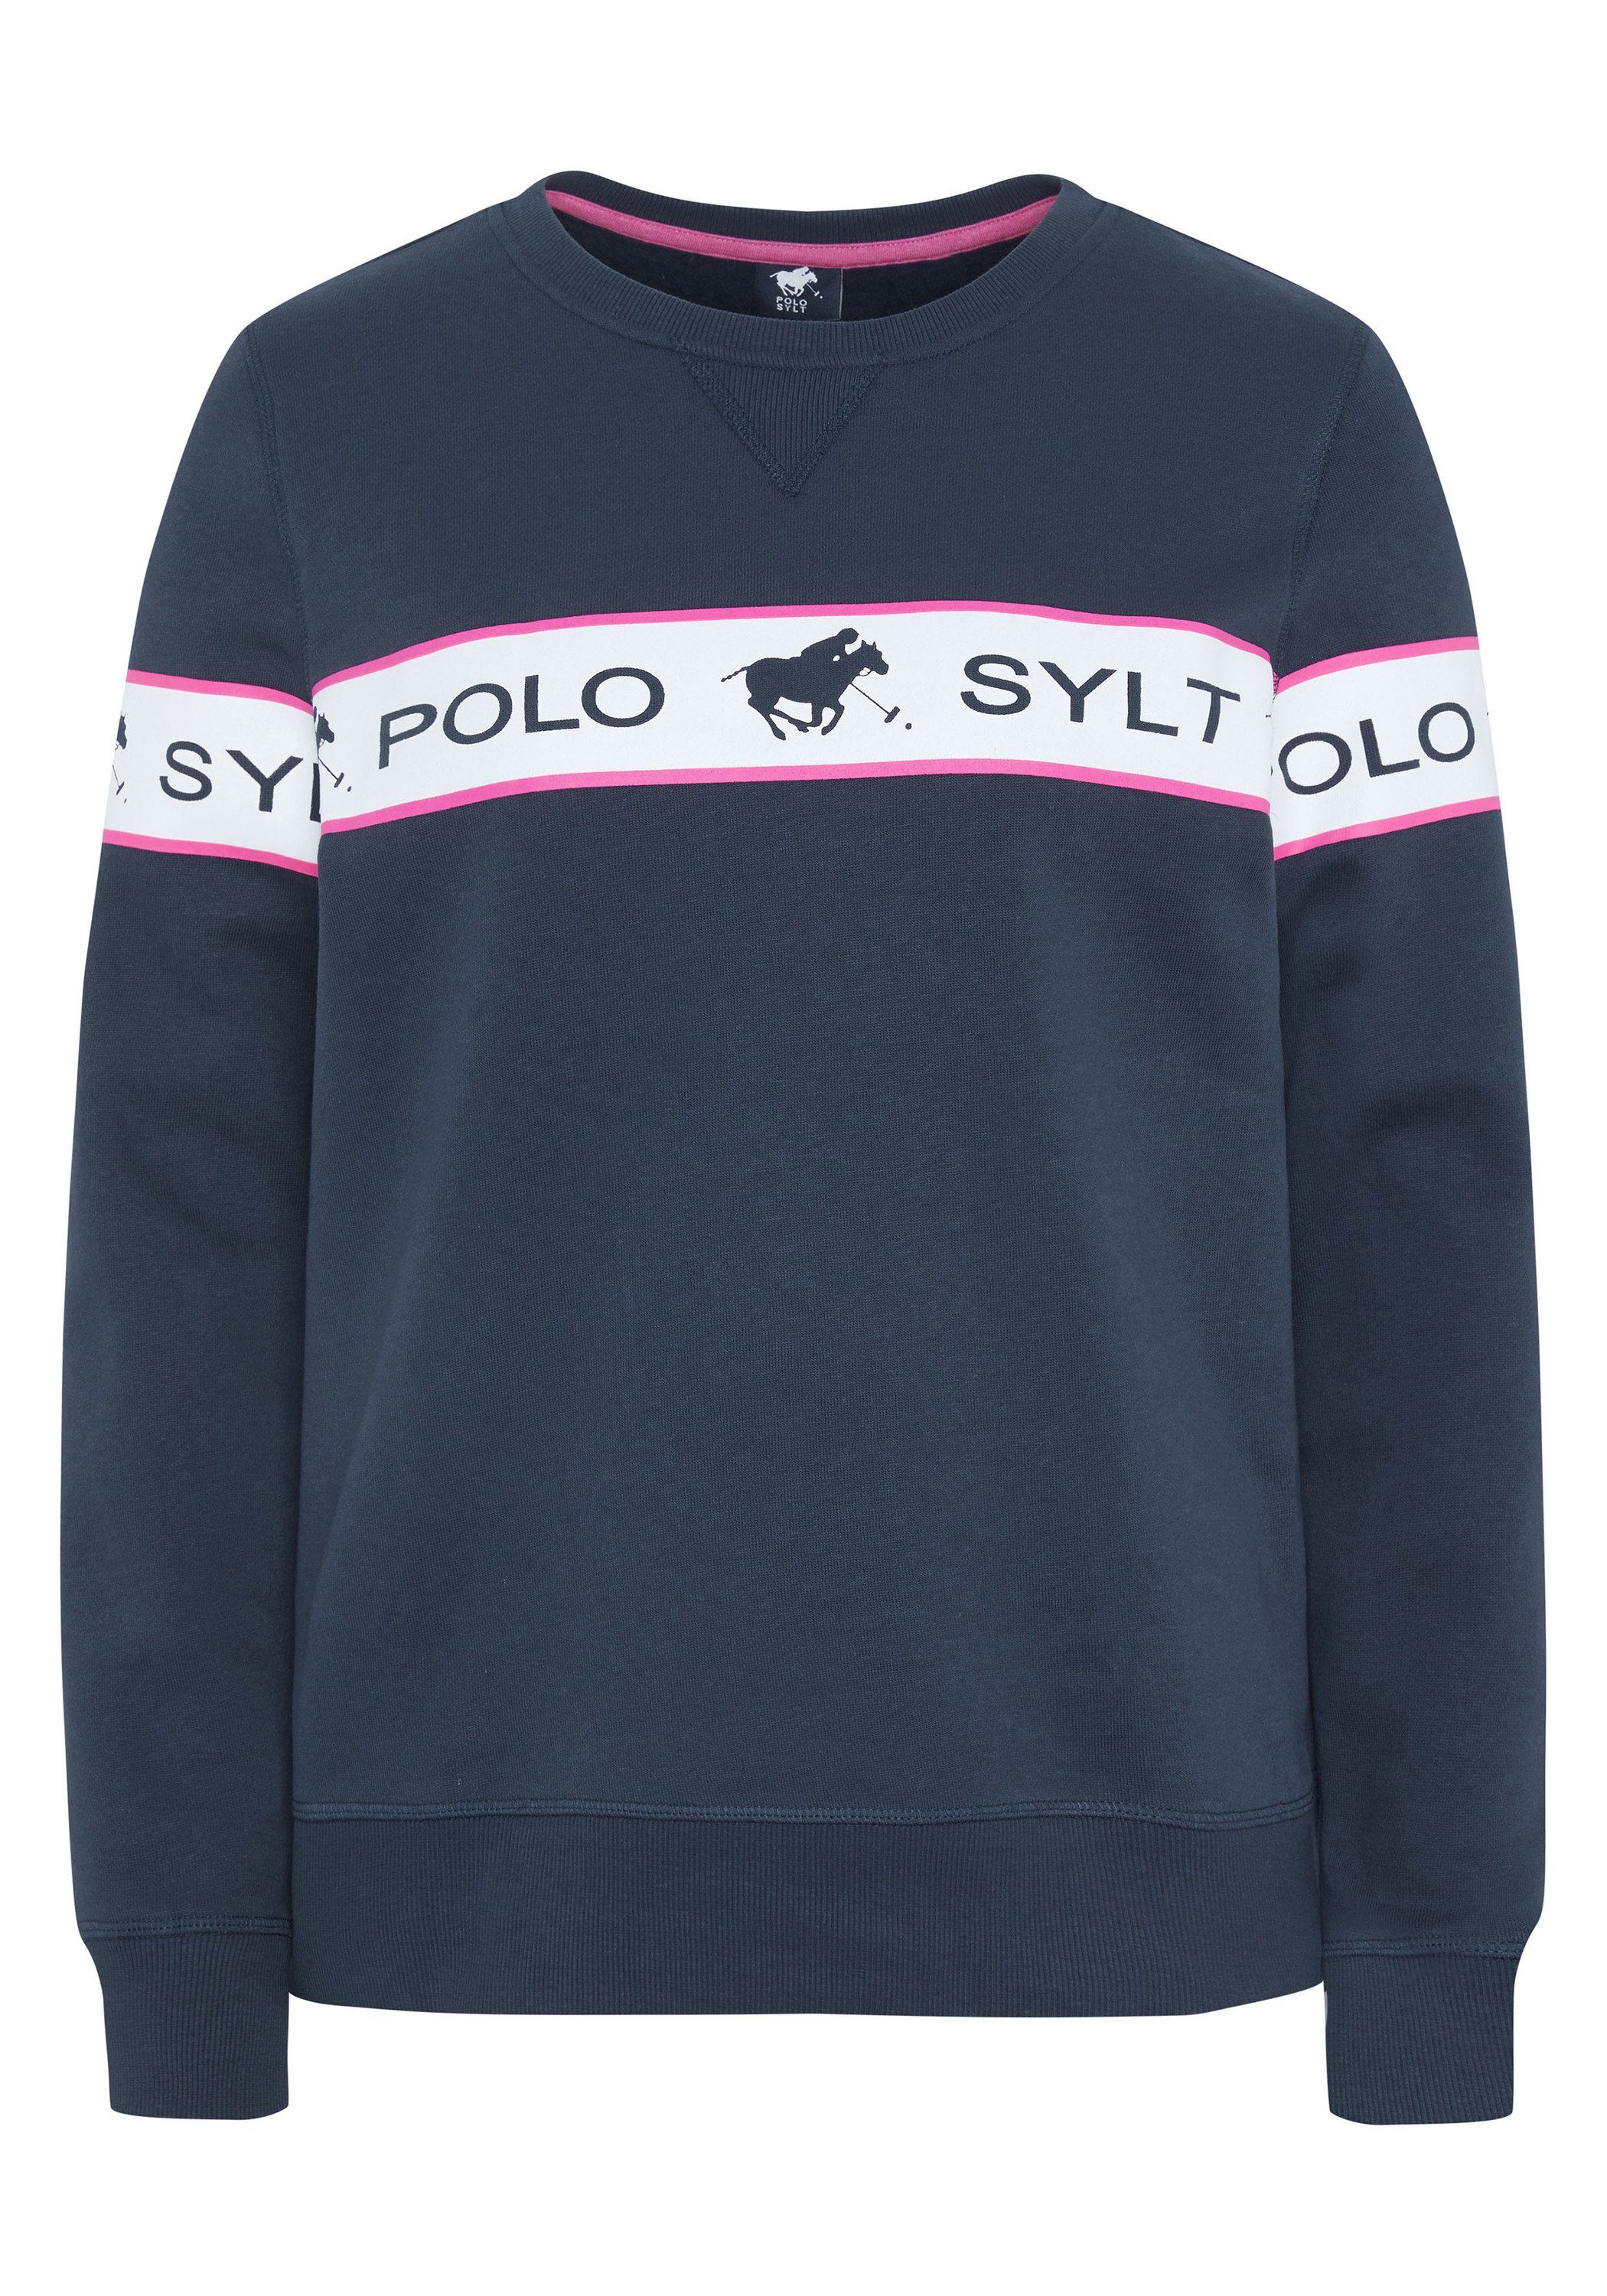 Polo Sylt Sweatshirt mit eingearbeitetem Logo-Kontraststreifen 19-4010 Total Eclipse